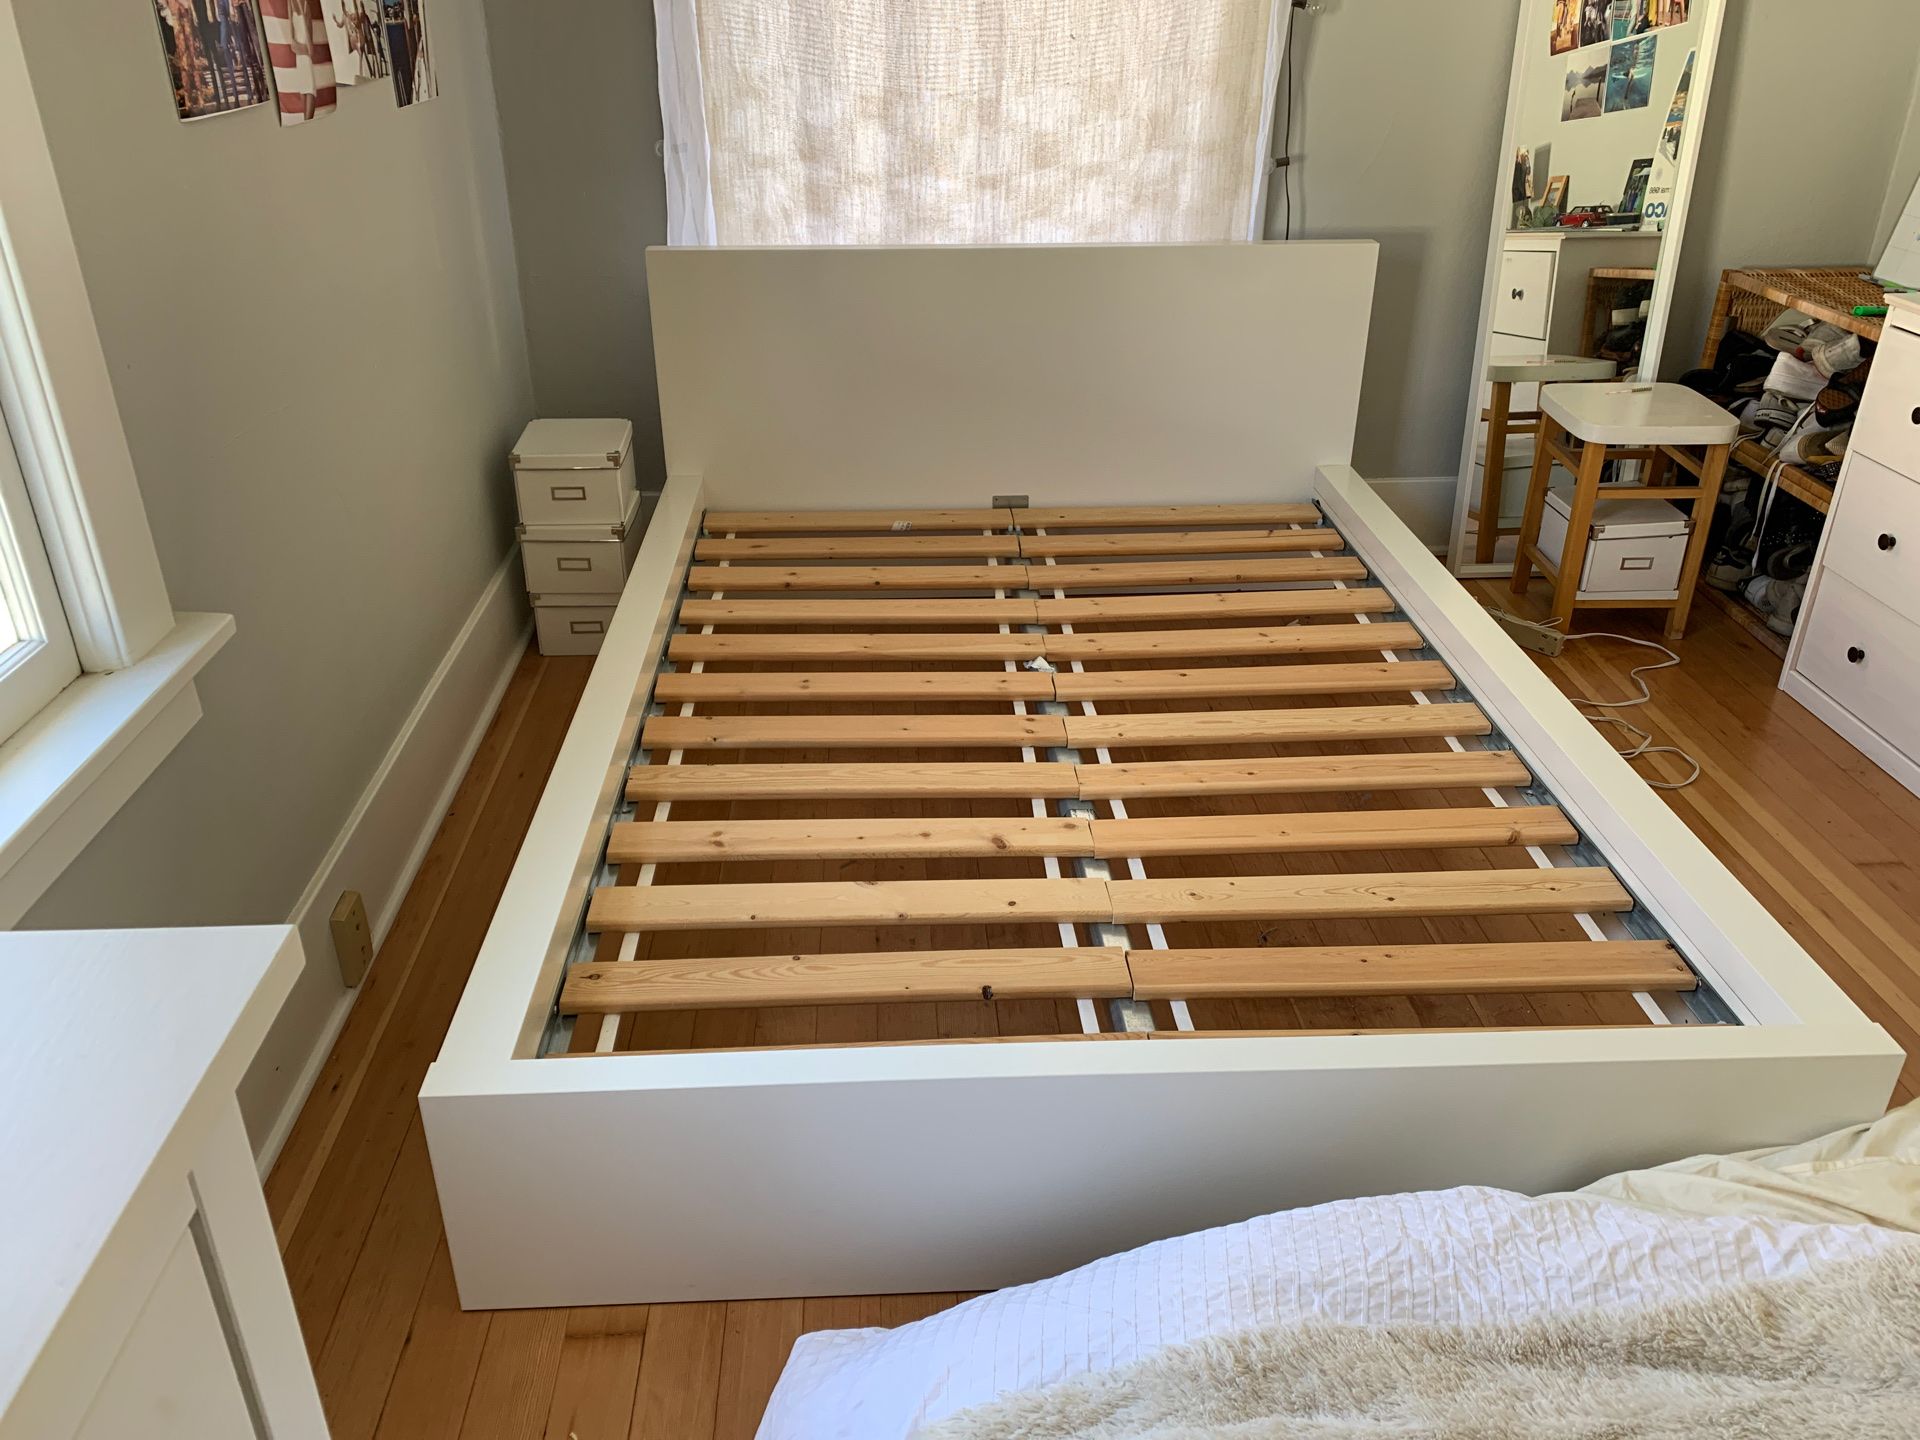 White IKEA Bed Frame Full